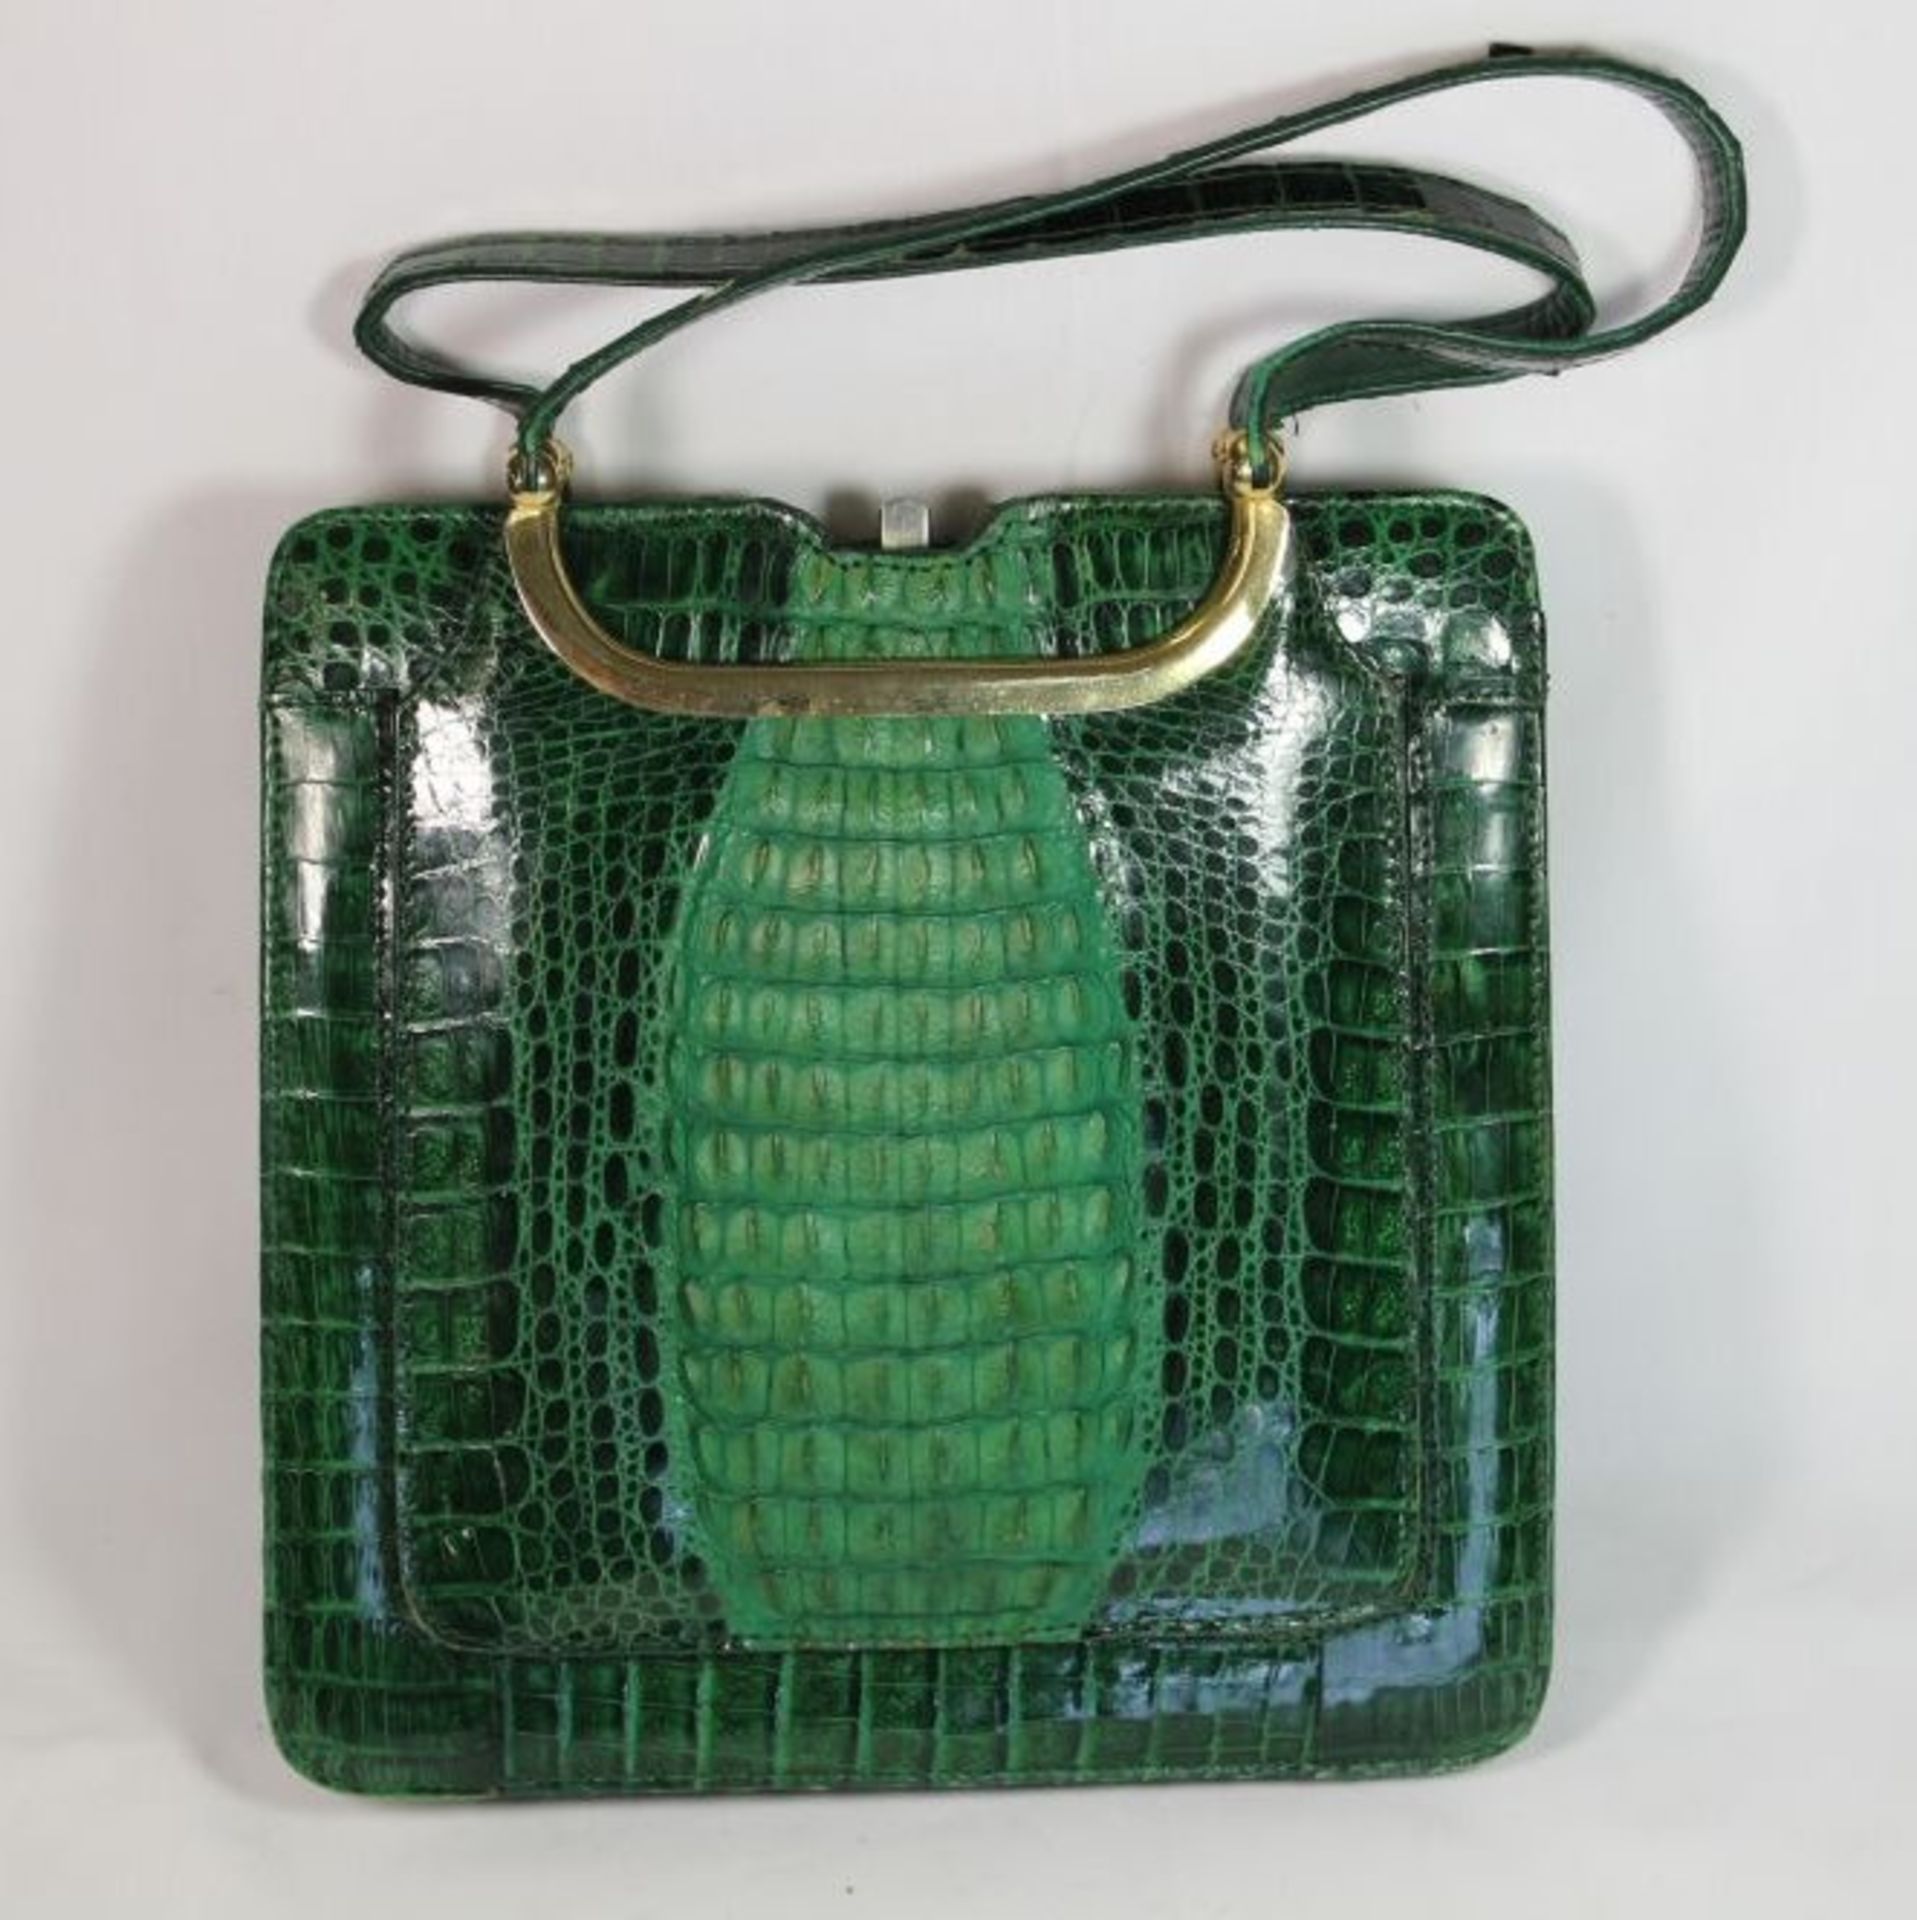 Krokolderhandtasche, grün, älter, Tragespuren, H-25,5 x 23,5cm